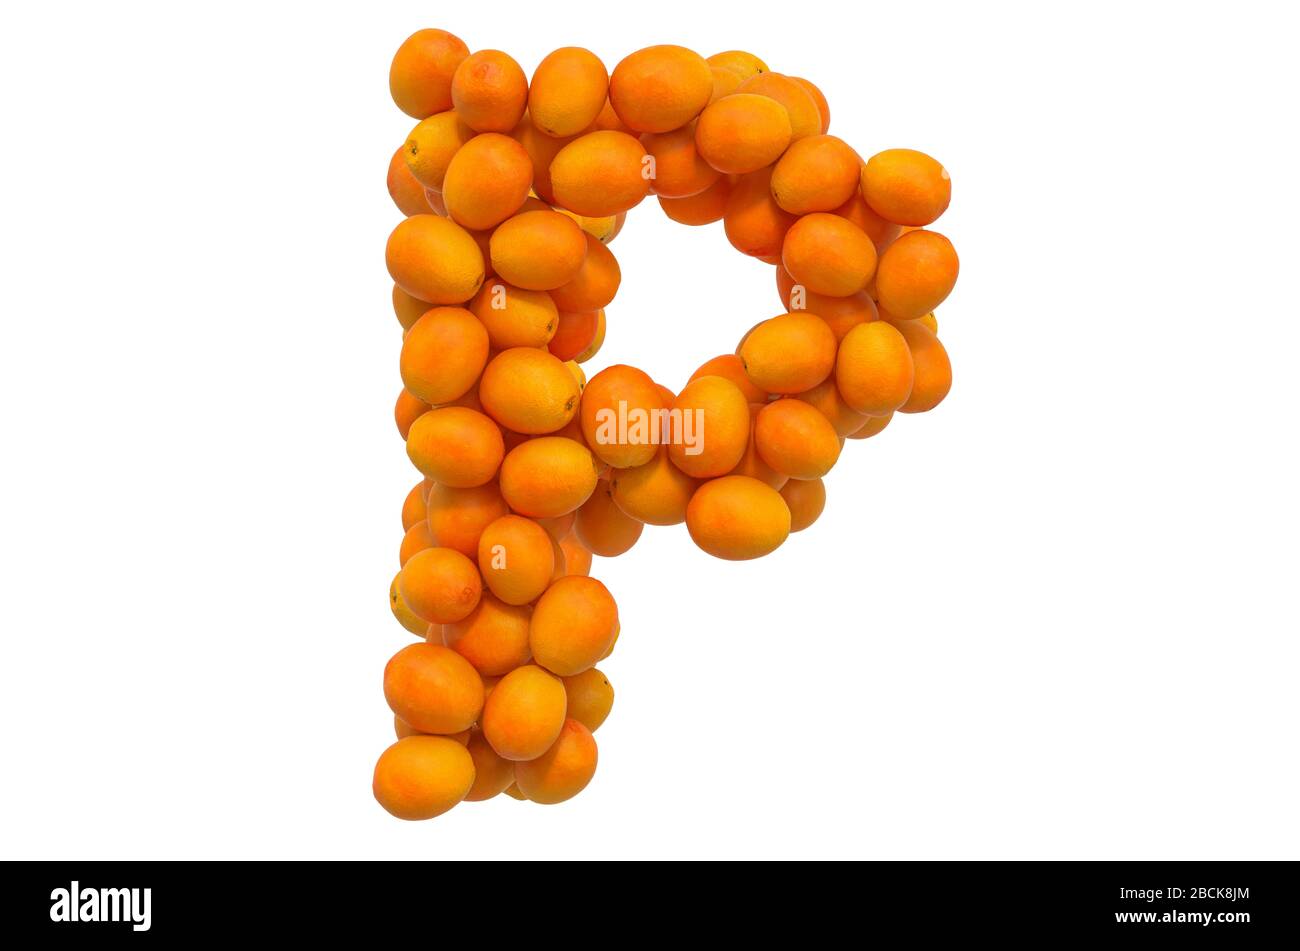 Lettre P d'oranges, rendu tridimensionnel isolé sur fond blanc Banque D'Images